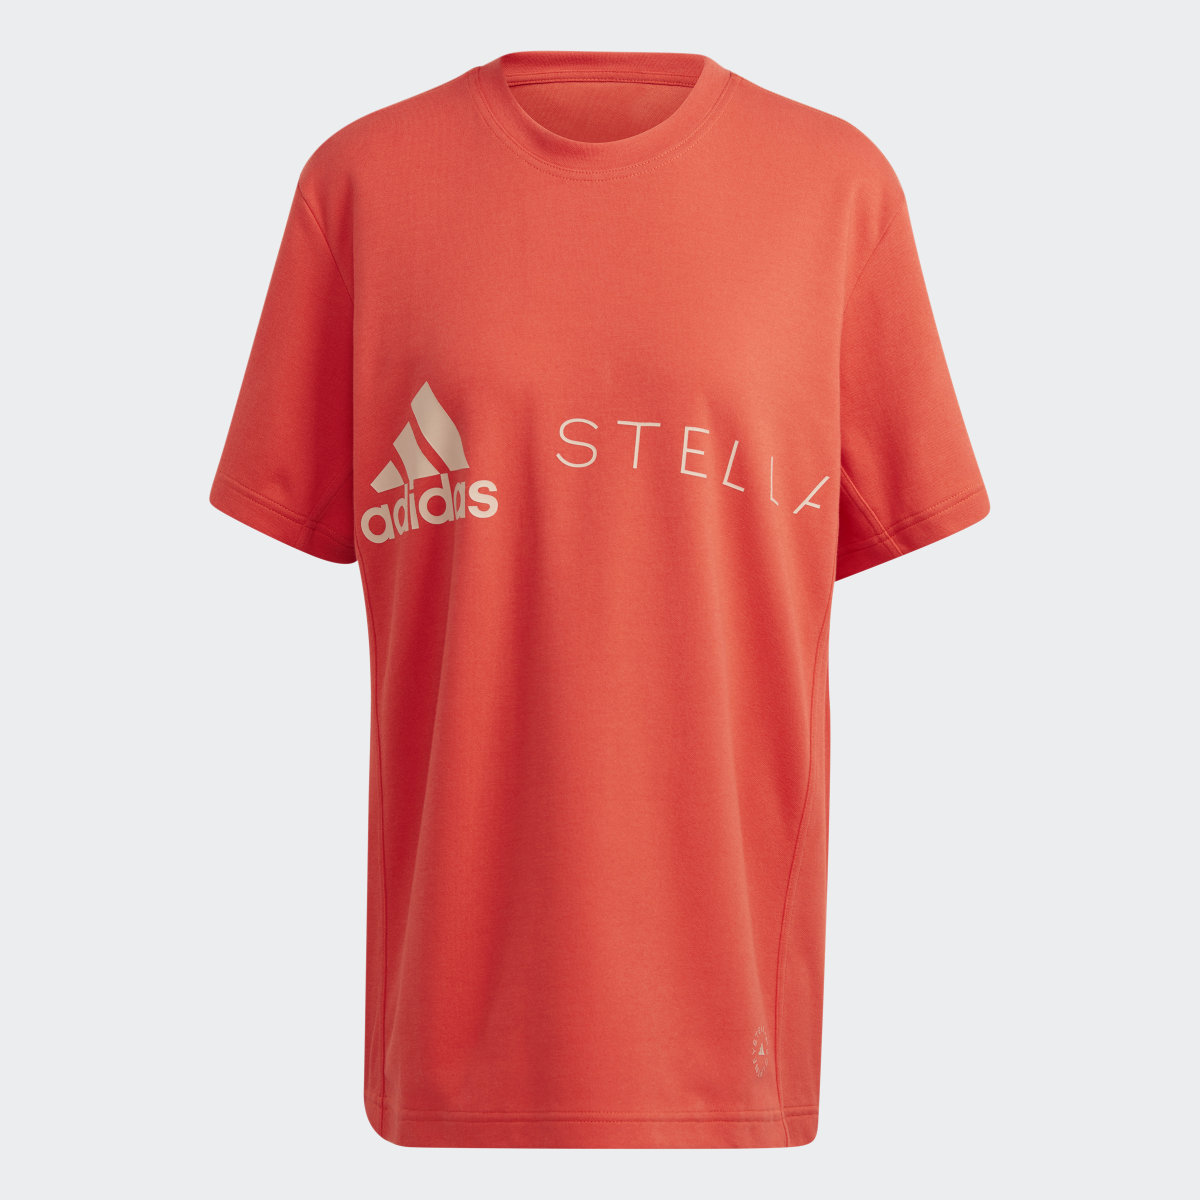 Adidas by Stella McCartney Logo T-Shirt. 5